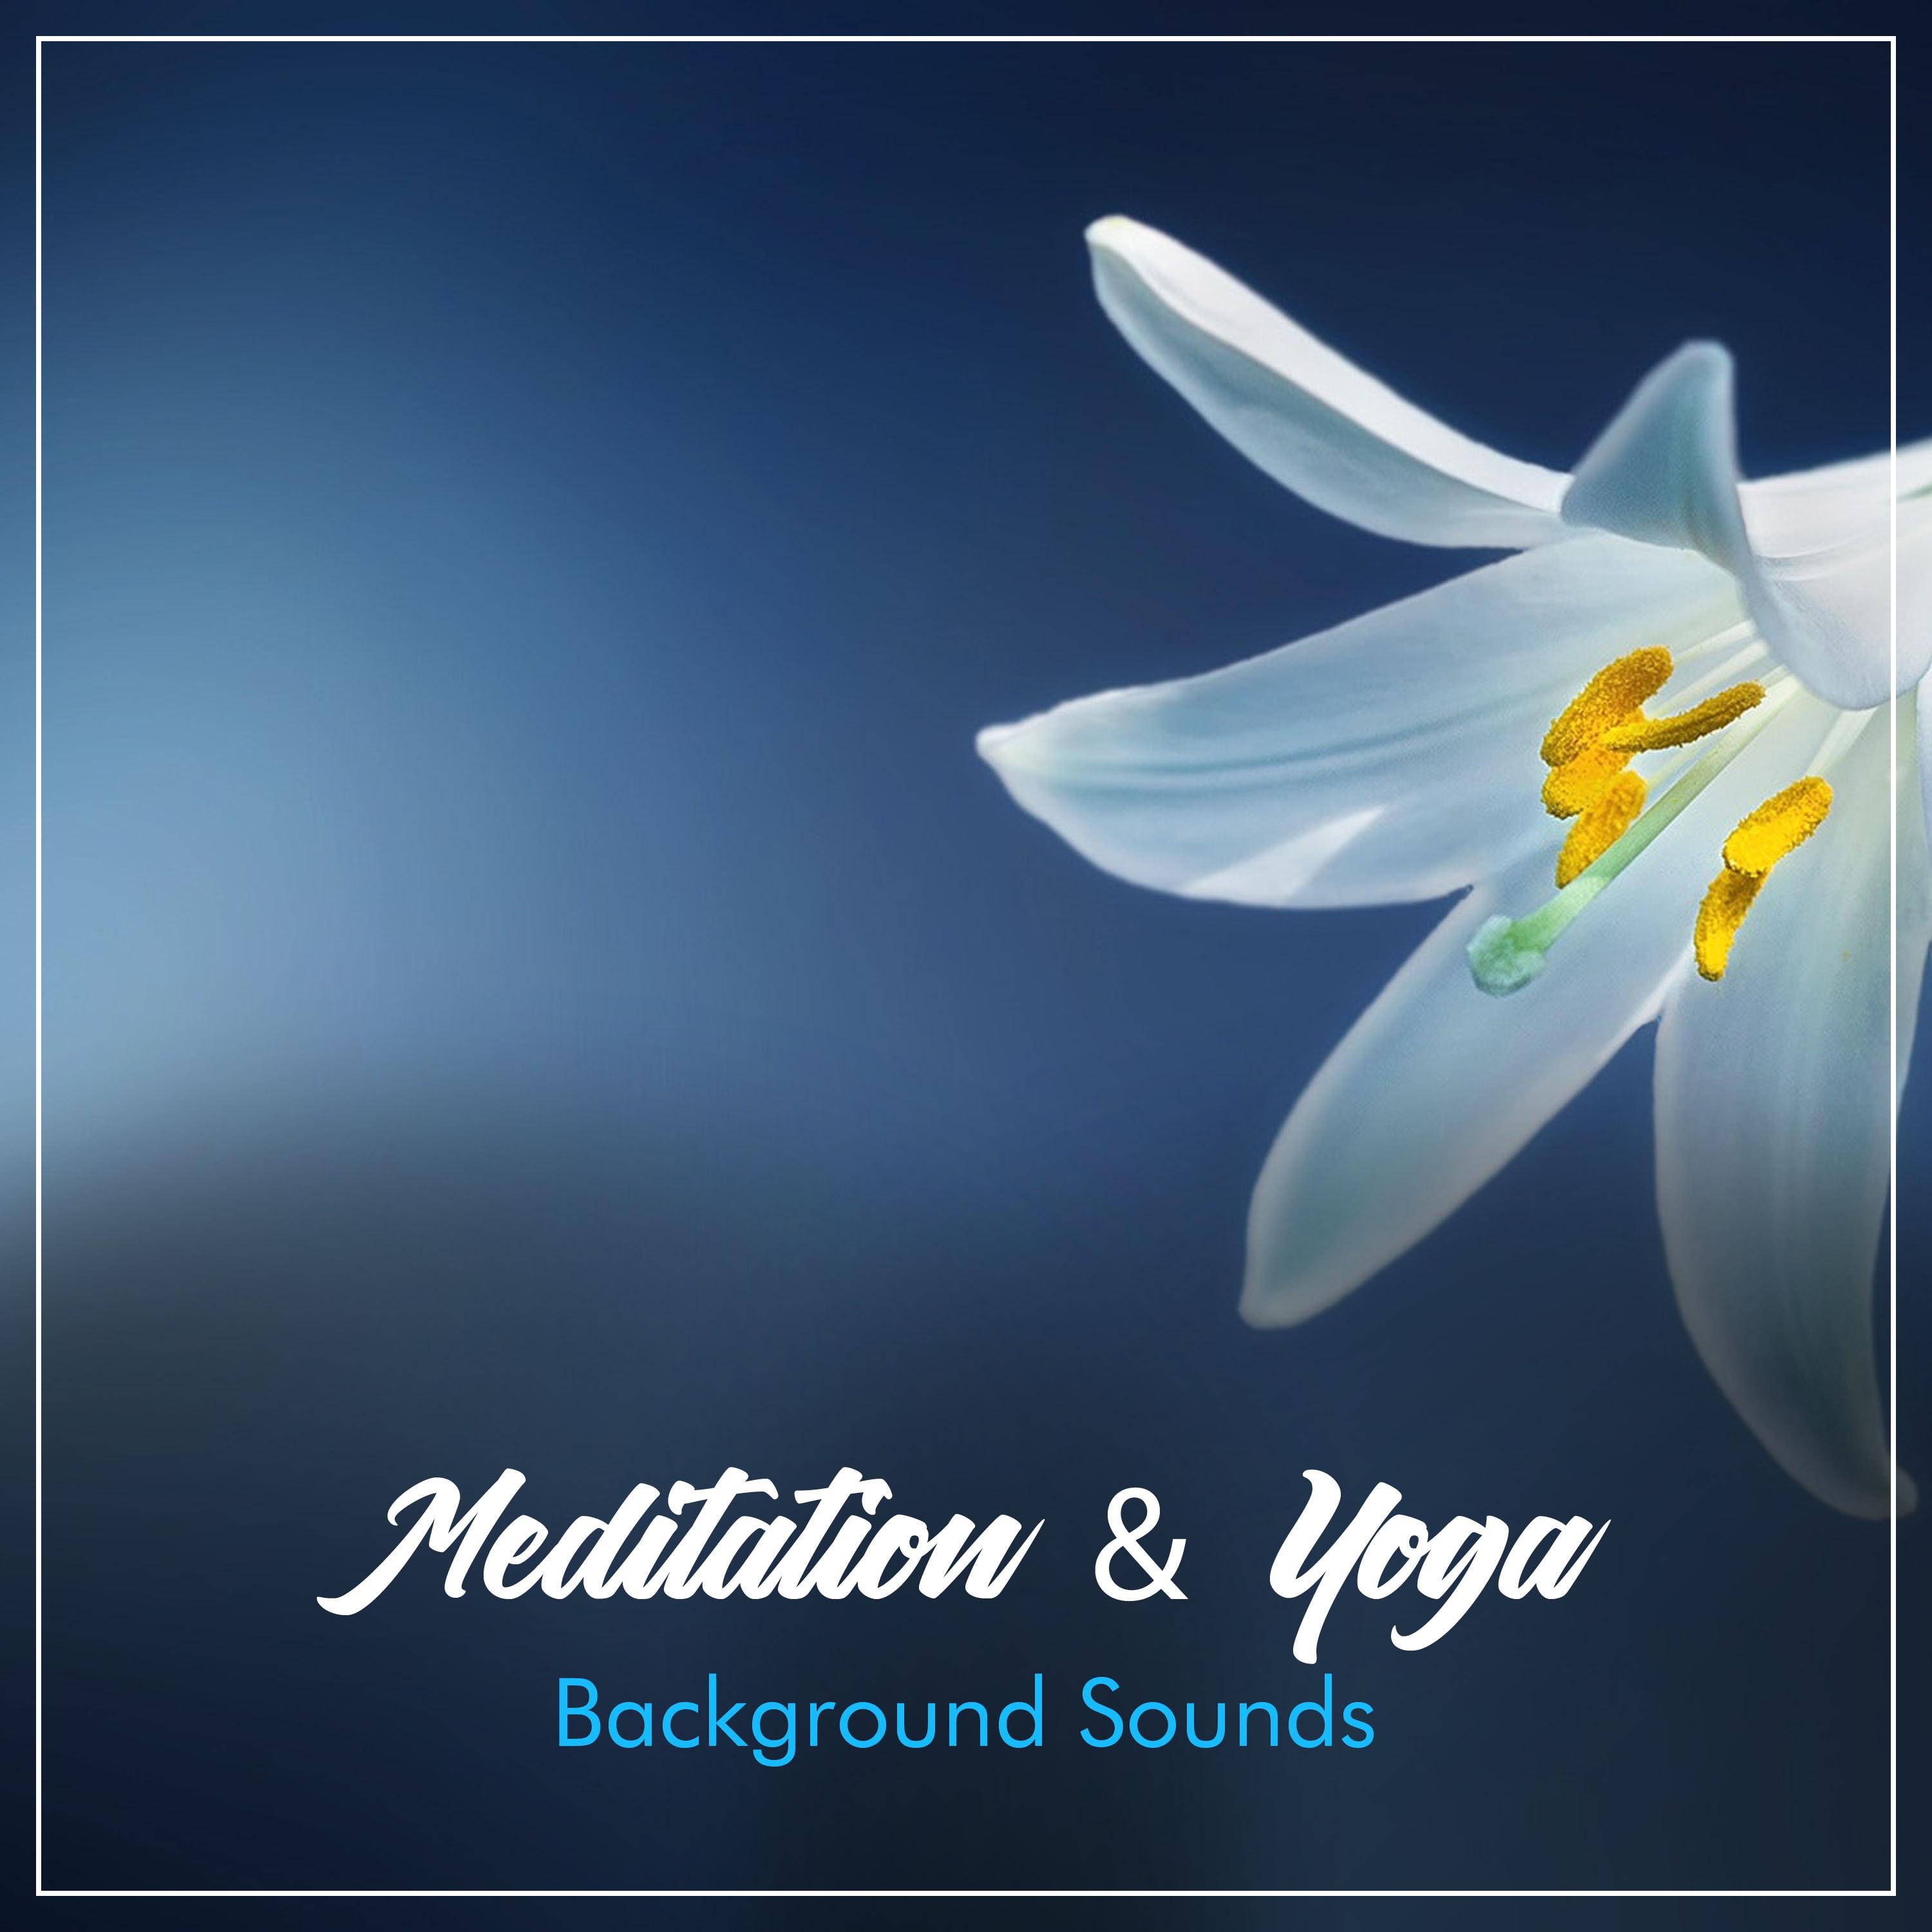 19 Background Sounds for Meditation or Yoga